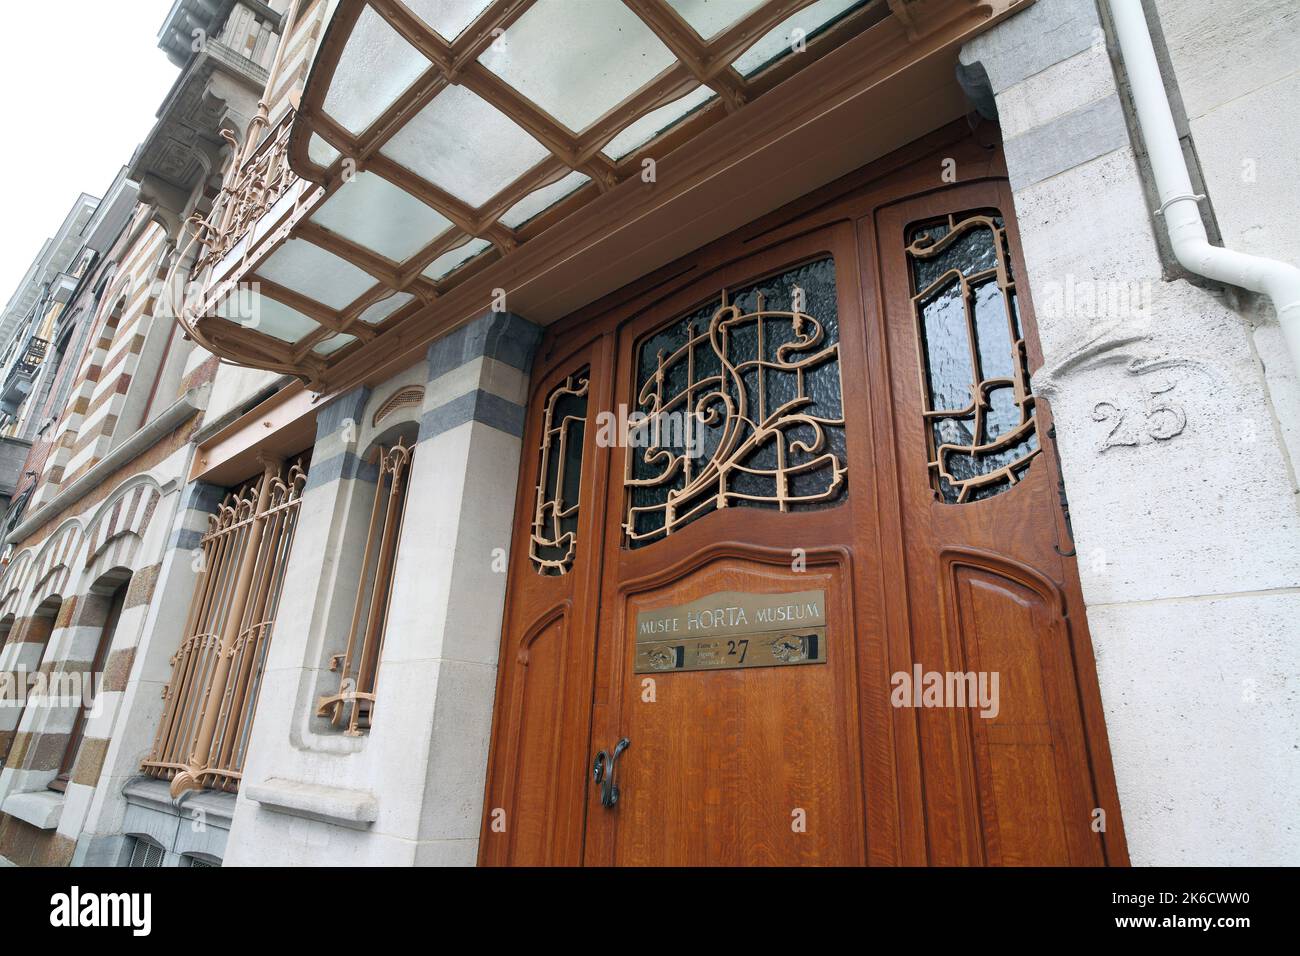 La entrada al Museo Horta - la casa y estudio del arquitecto Victor Horta, Bruselas, Bélgica. Foto de stock